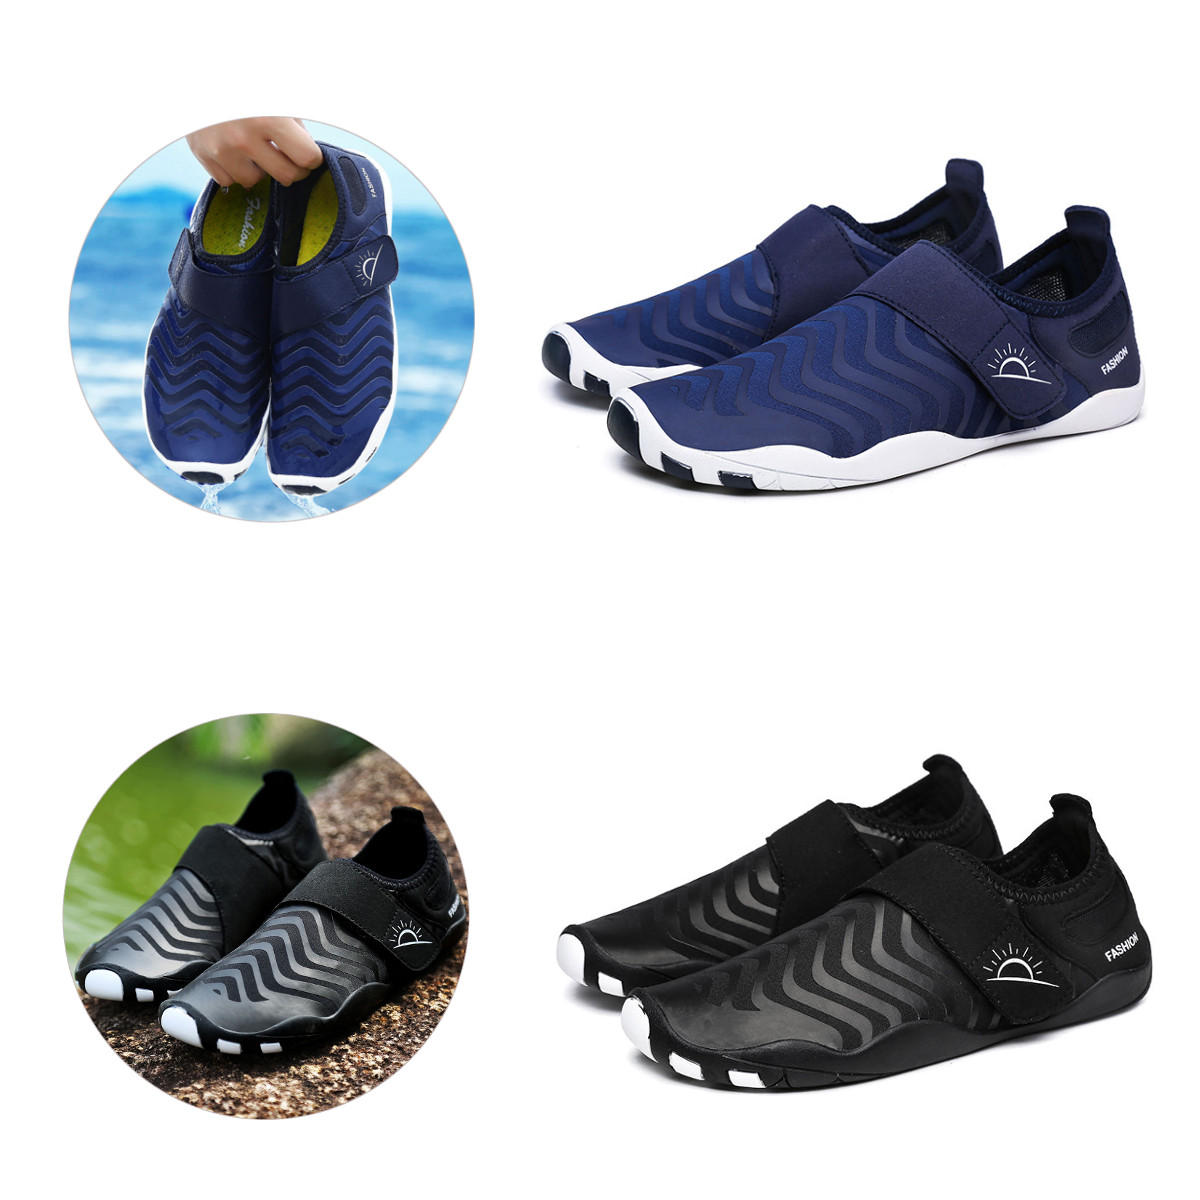 Pruhované ultraľahké vadné topánky, rýchloschnúce, ľahko sa obujú, vhodné pre šport na vonkajšom vzduchu, plávanie a jógu.